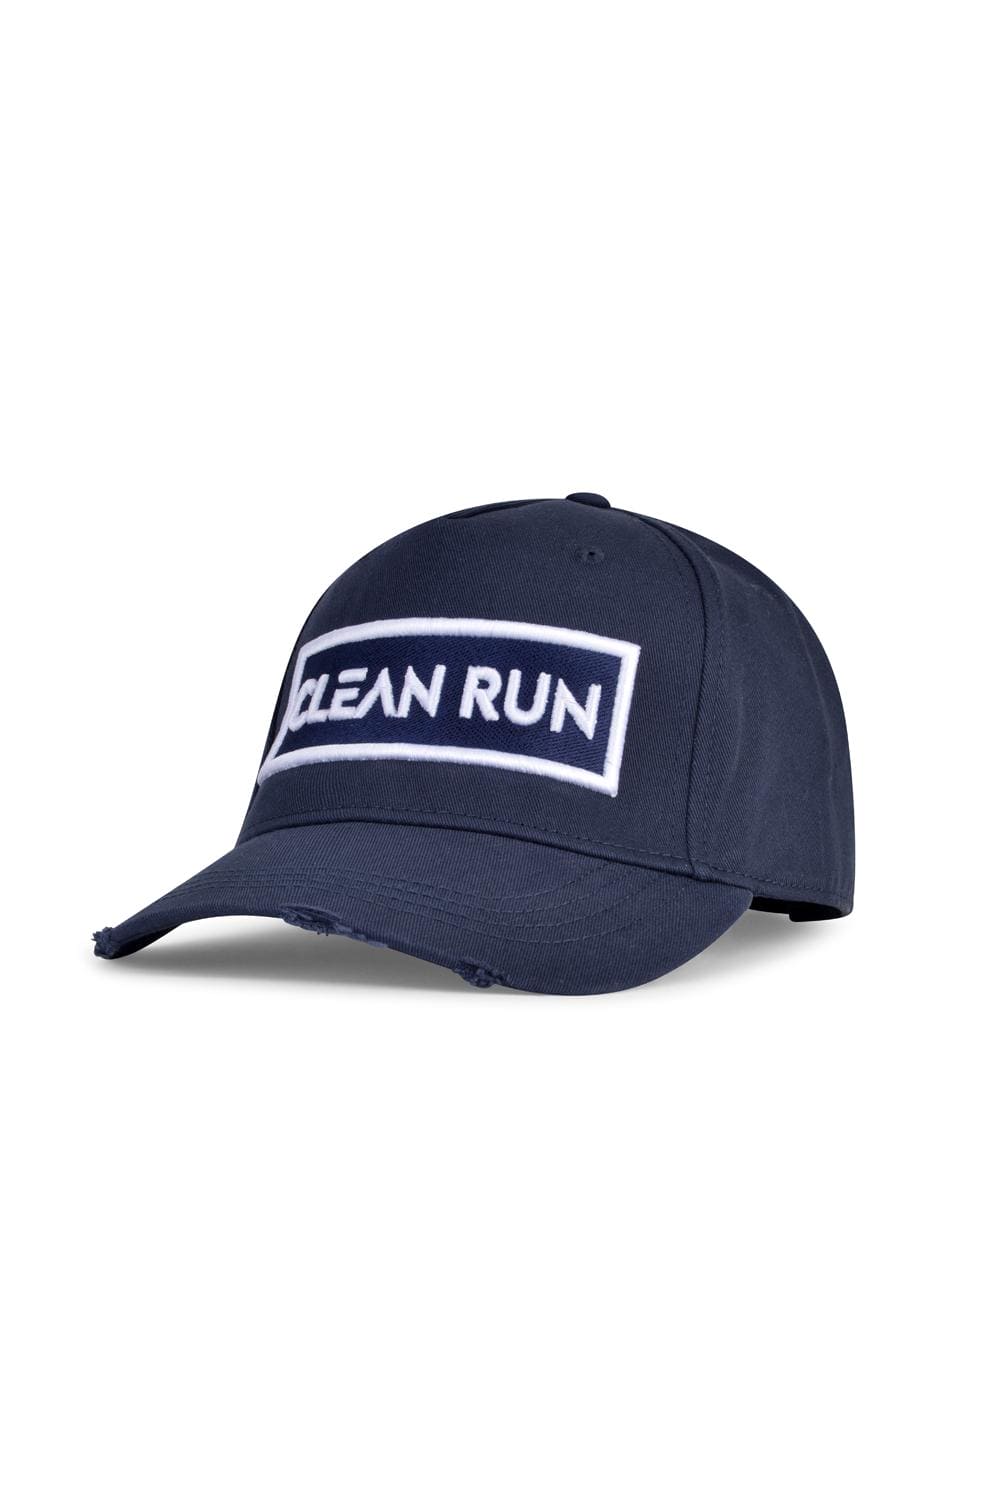 CLEAN RUN - NAVY CAP